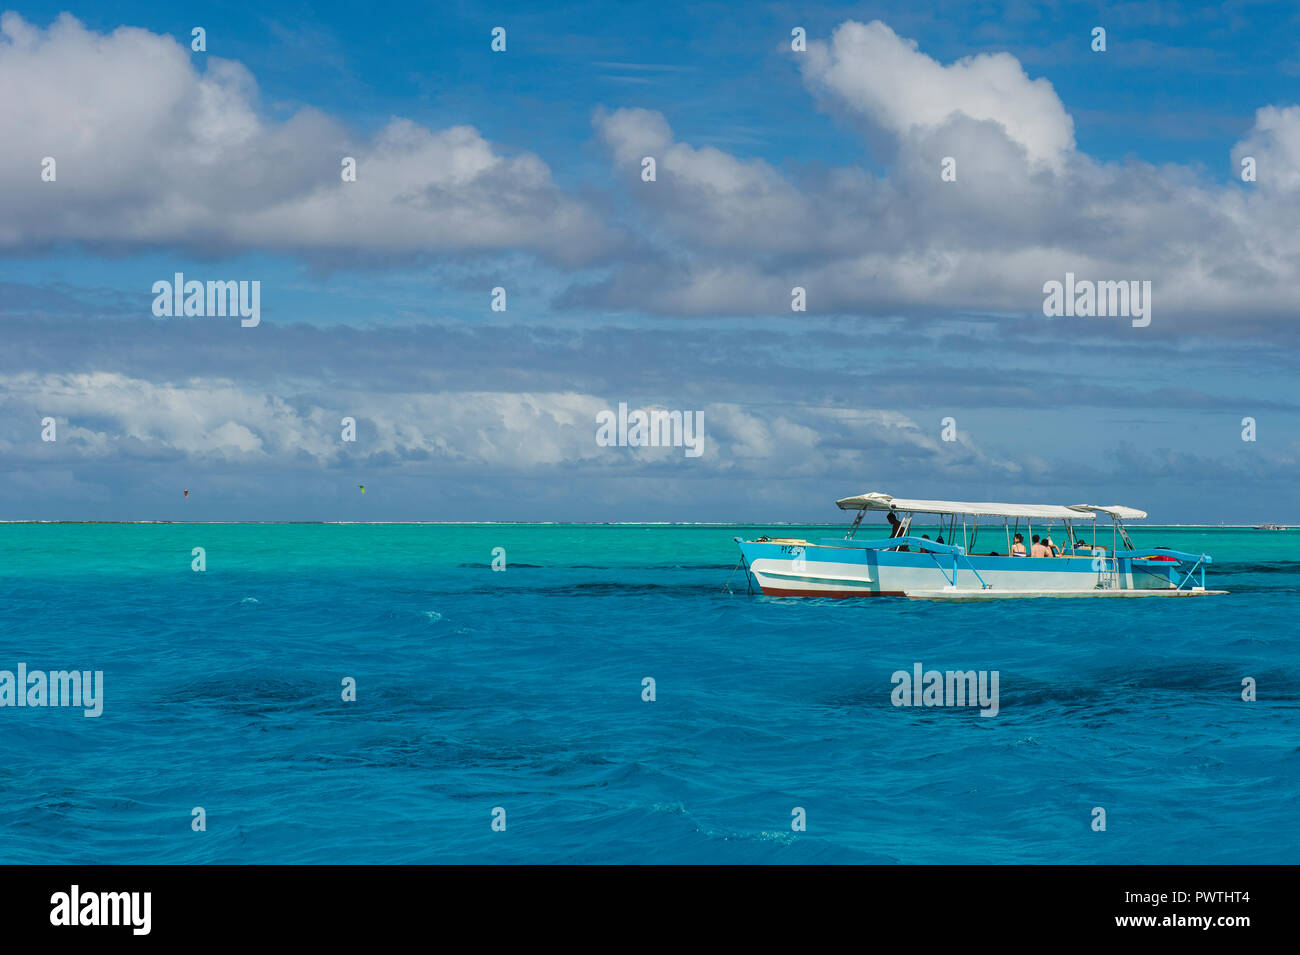 Bateau de tourisme dans le lagon turquoise de Bora Bora, Französisch-Polynesien Banque D'Images